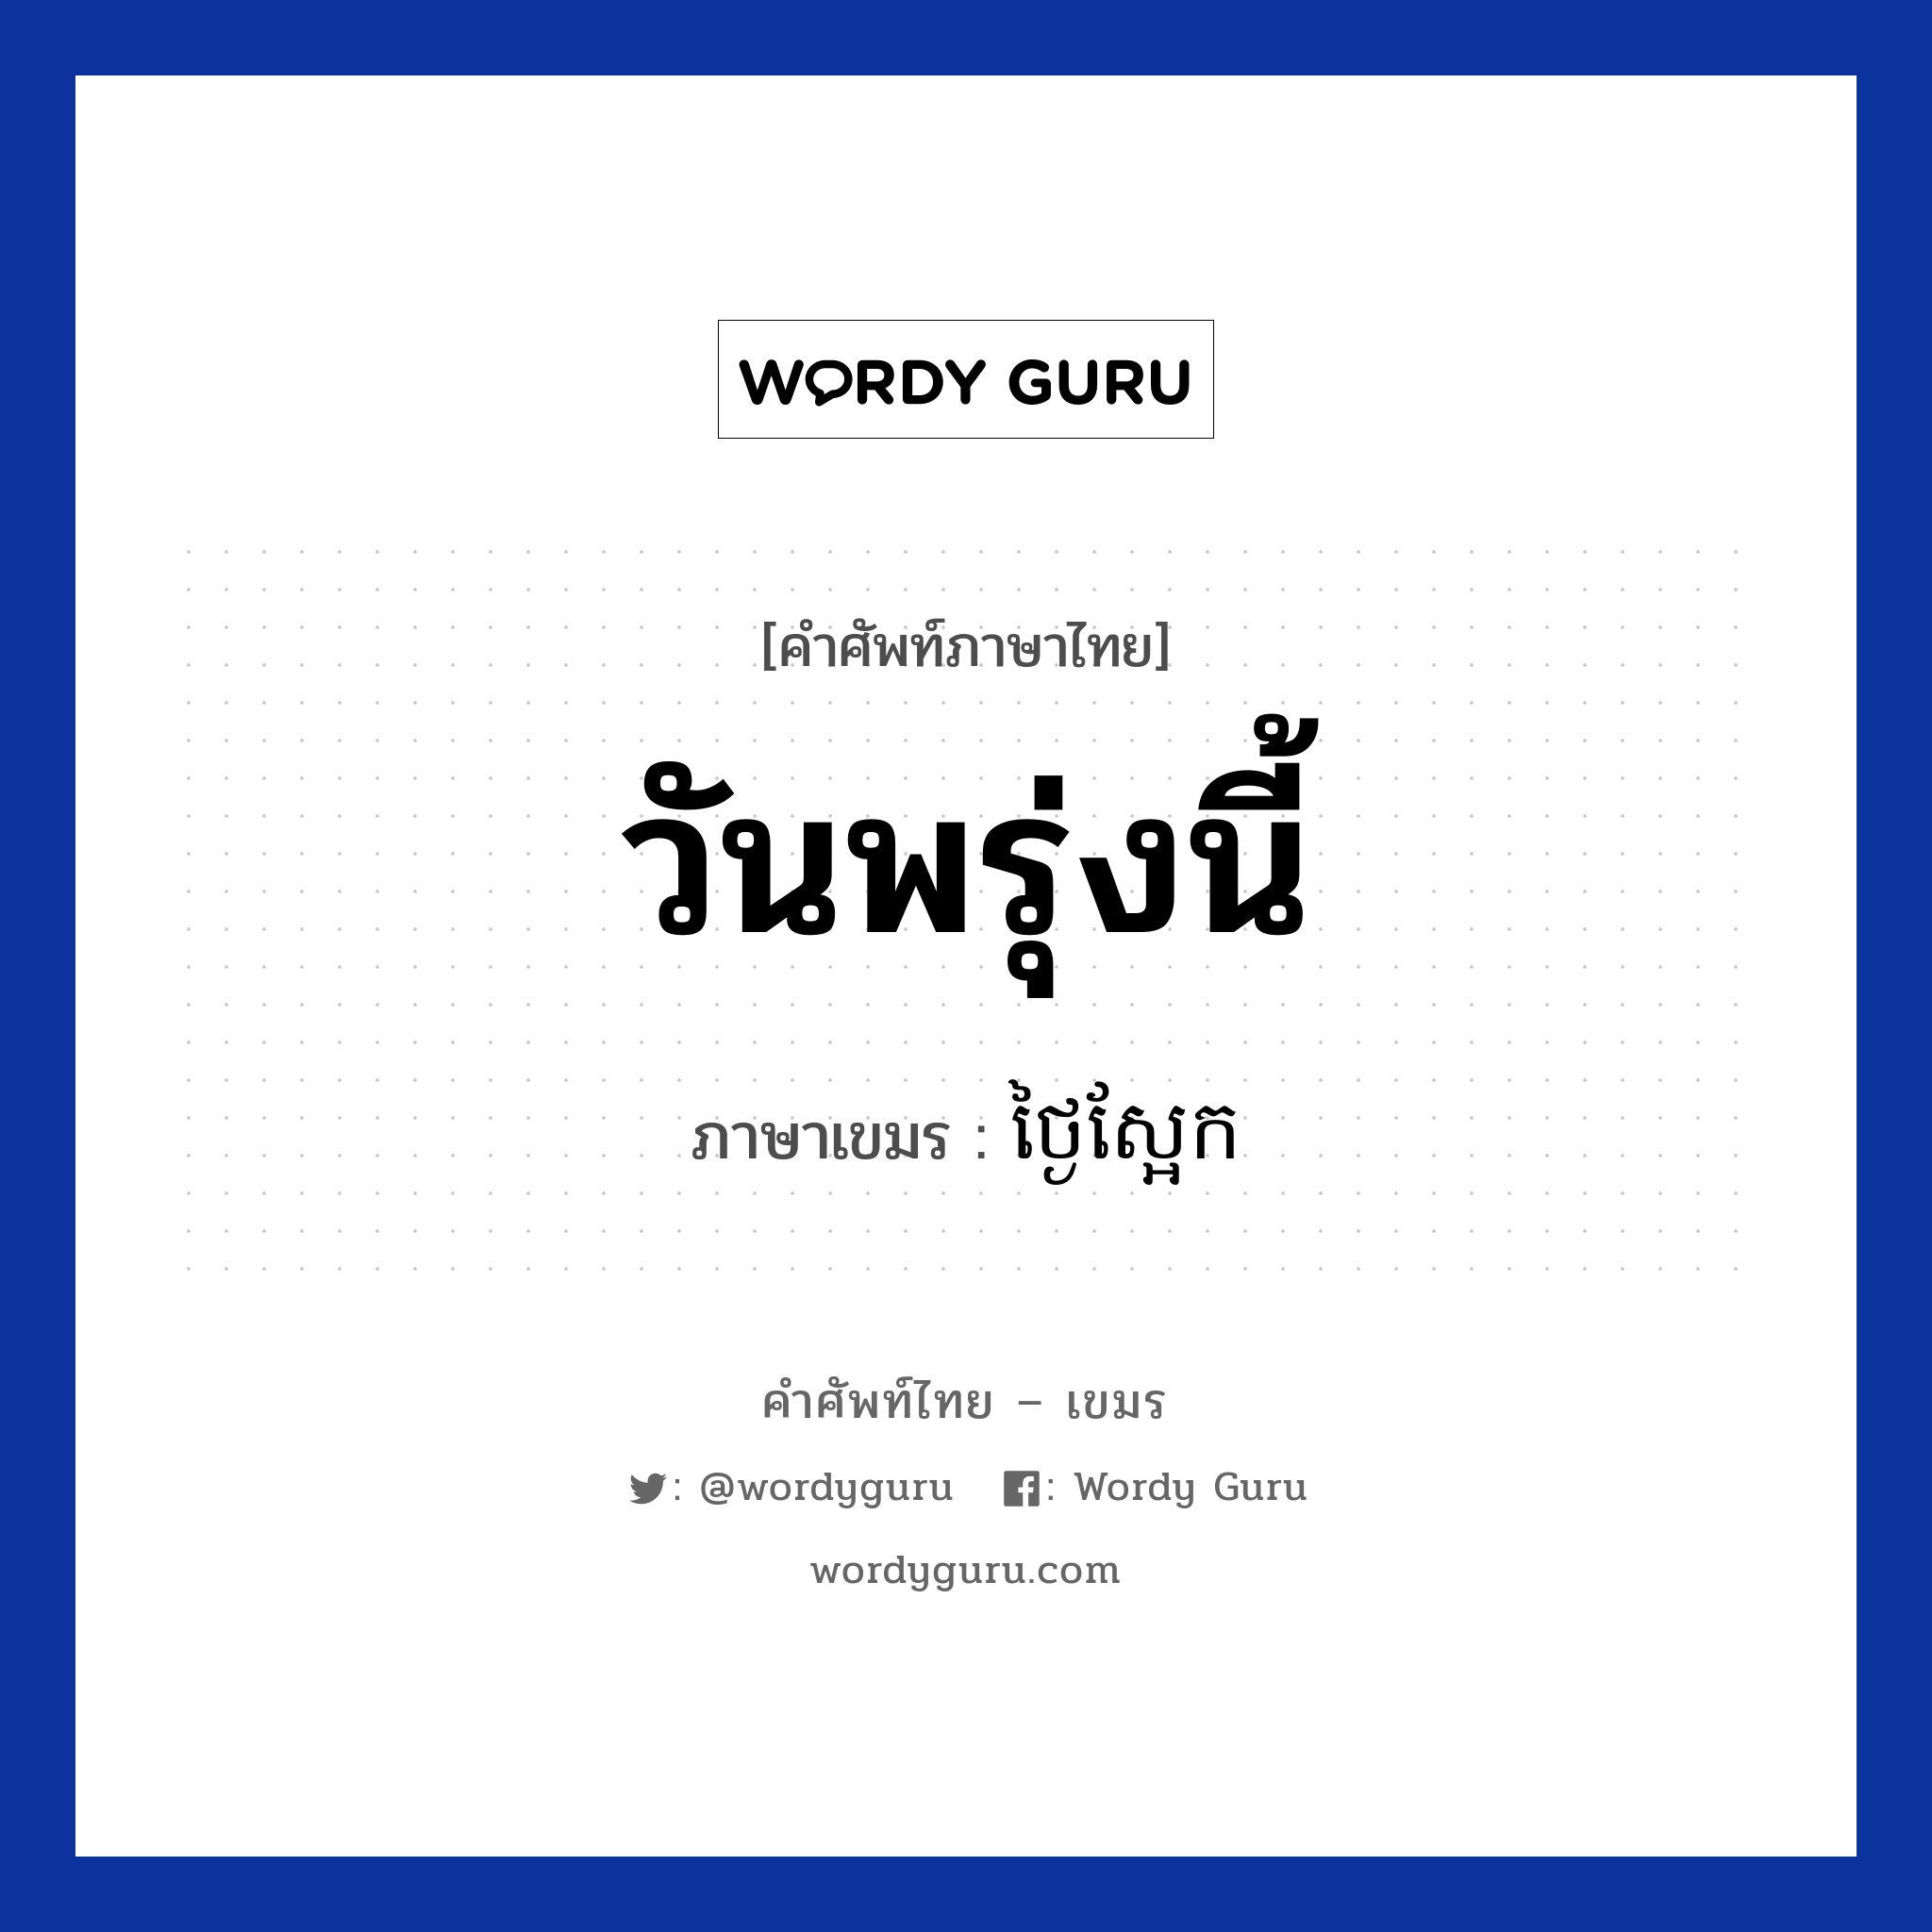 วันพรุ่งนี้ แปลว่า? คำศัพท์ในกลุ่มประเภท วัน, คำศัพท์ภาษาไทย - เขมร วันพรุ่งนี้ ภาษาเขมร ថ្ងៃស្អែក หมวด วัน Tngai saek หมวด วัน